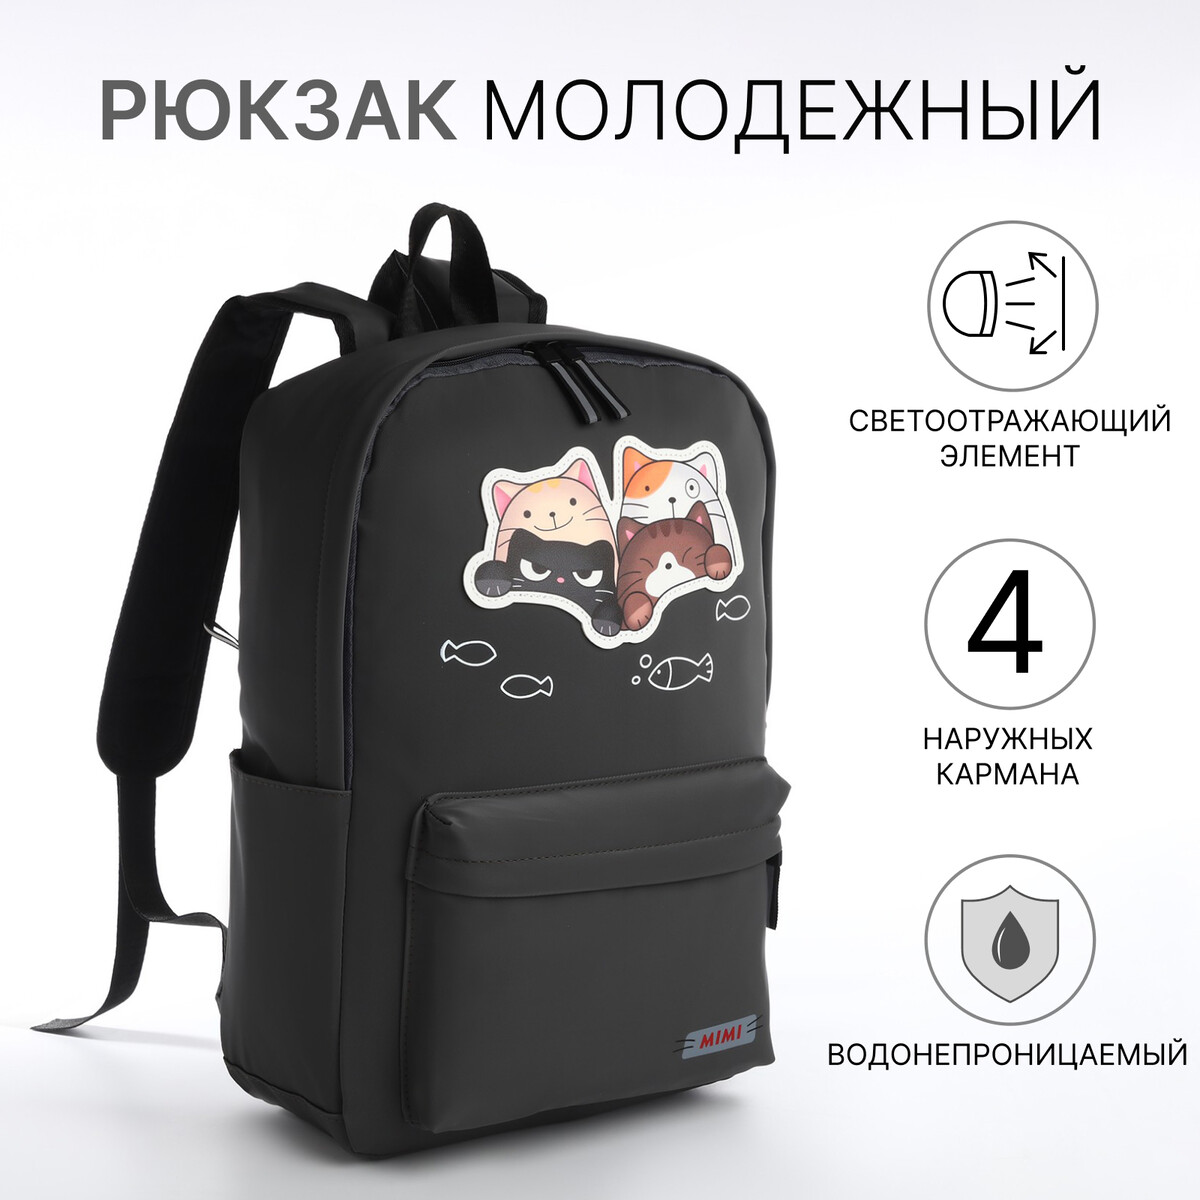 Рюкзак молодежный из текстиля на молнии, 4 кармана, цвет серый рюкзак молодежный grizzly с карманом для ноутбука 13 для мальчика rb 456 3 2